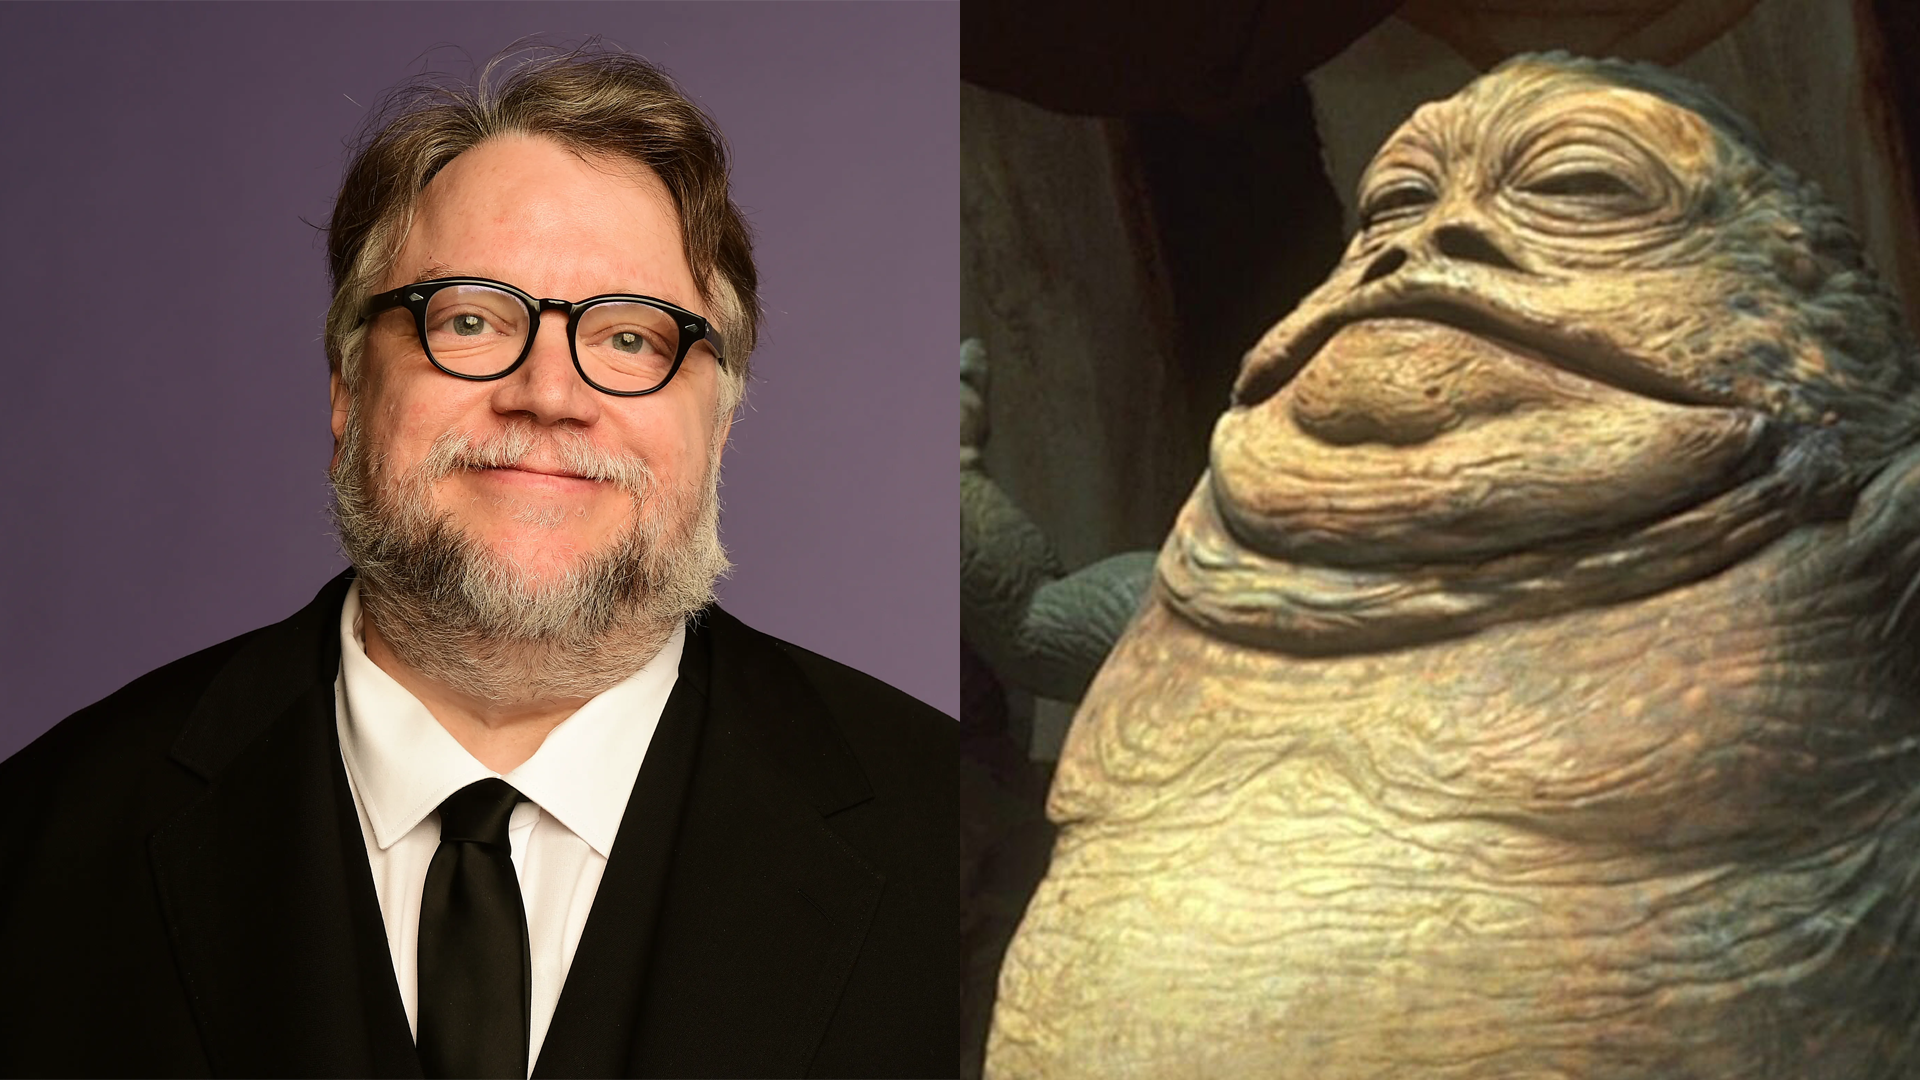 Guillermo del Toro Jabba The Hutt Star Wars